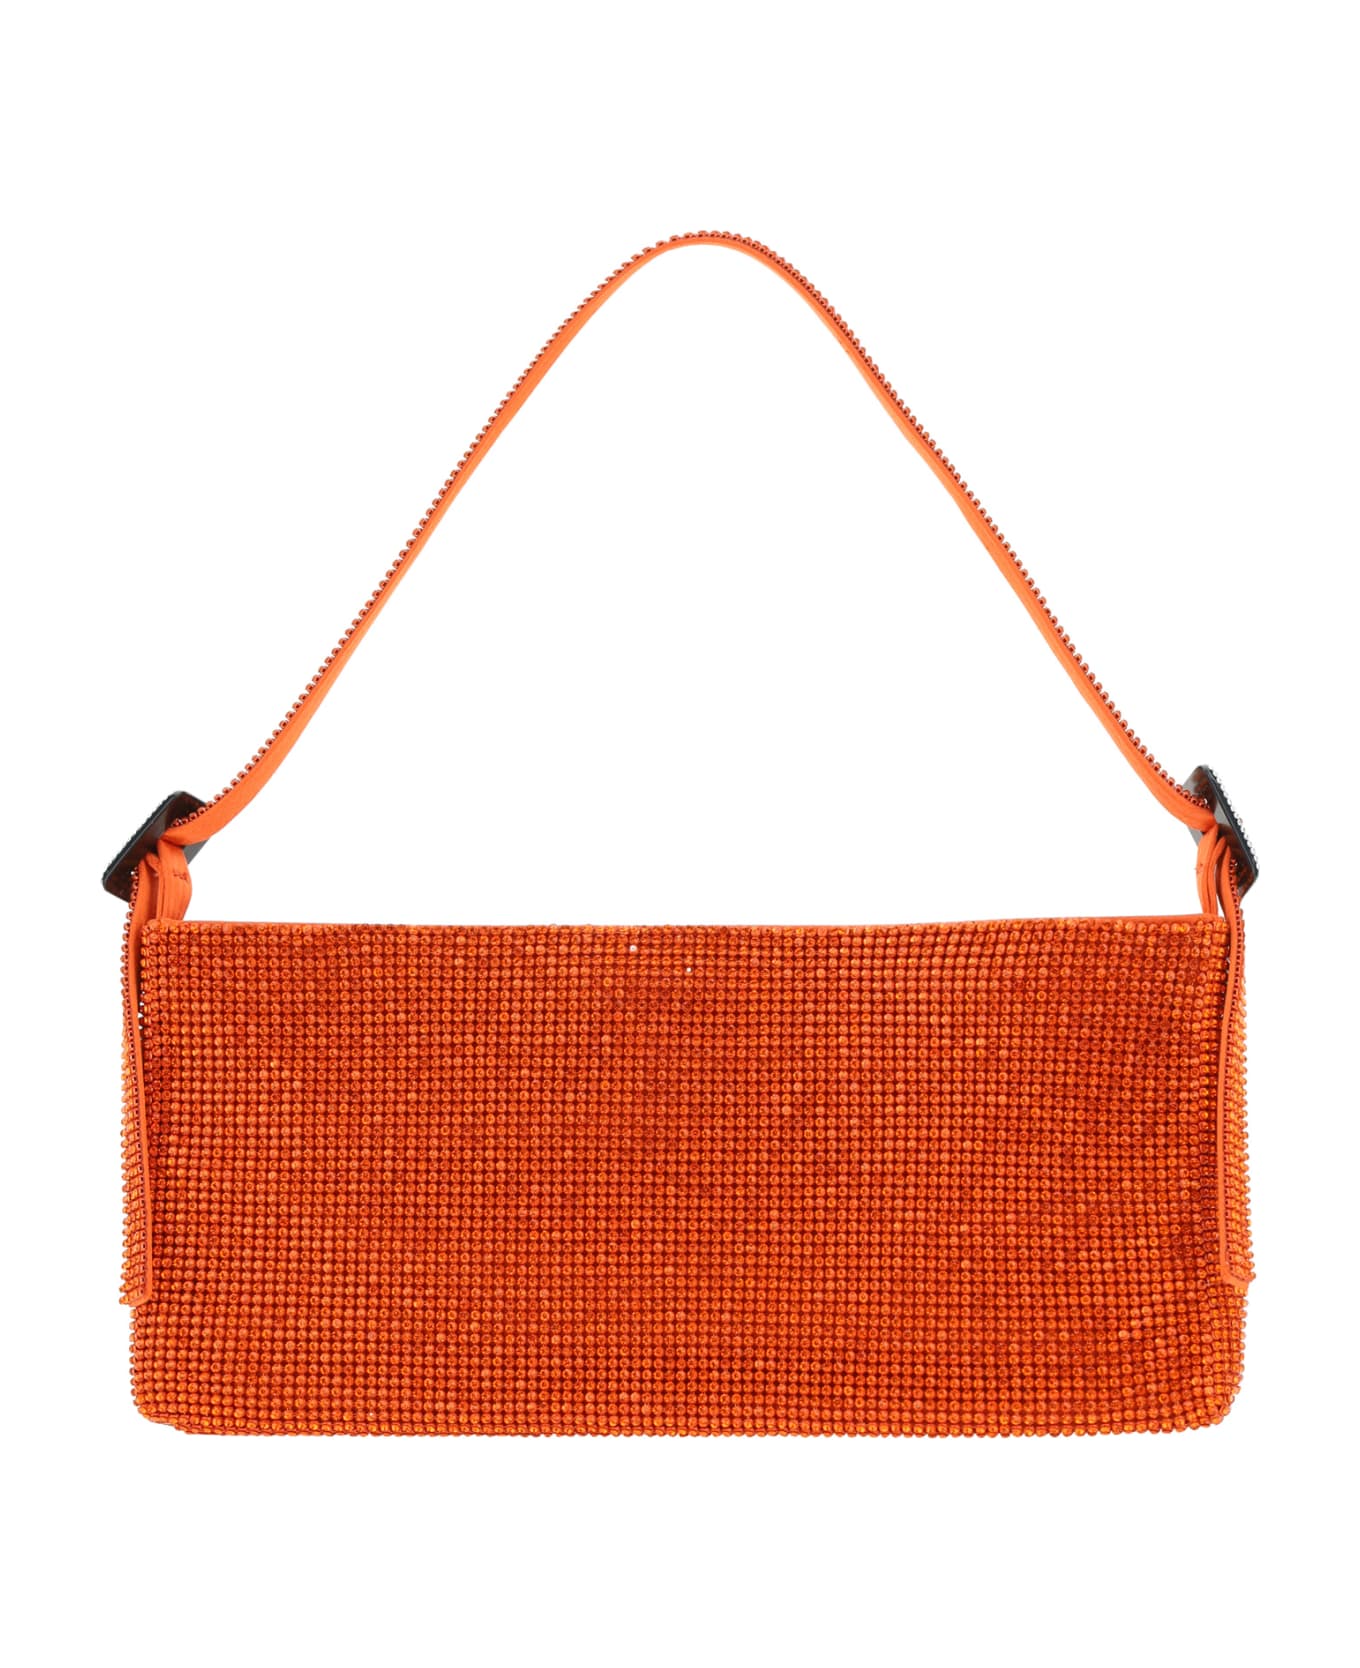 Benedetta Bruzziches Handbag - Orange